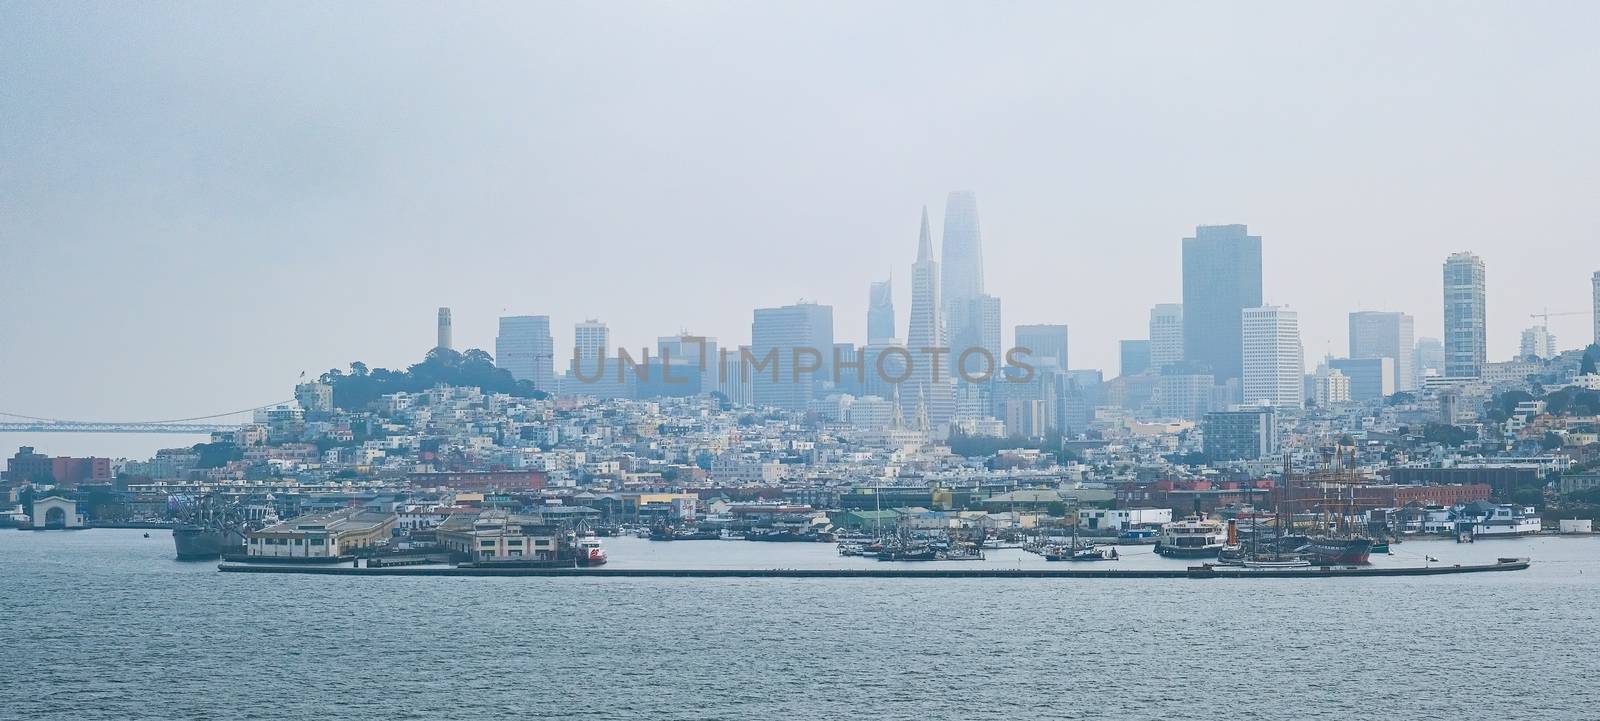 Foggy Coast of San Francisco by dbvirago